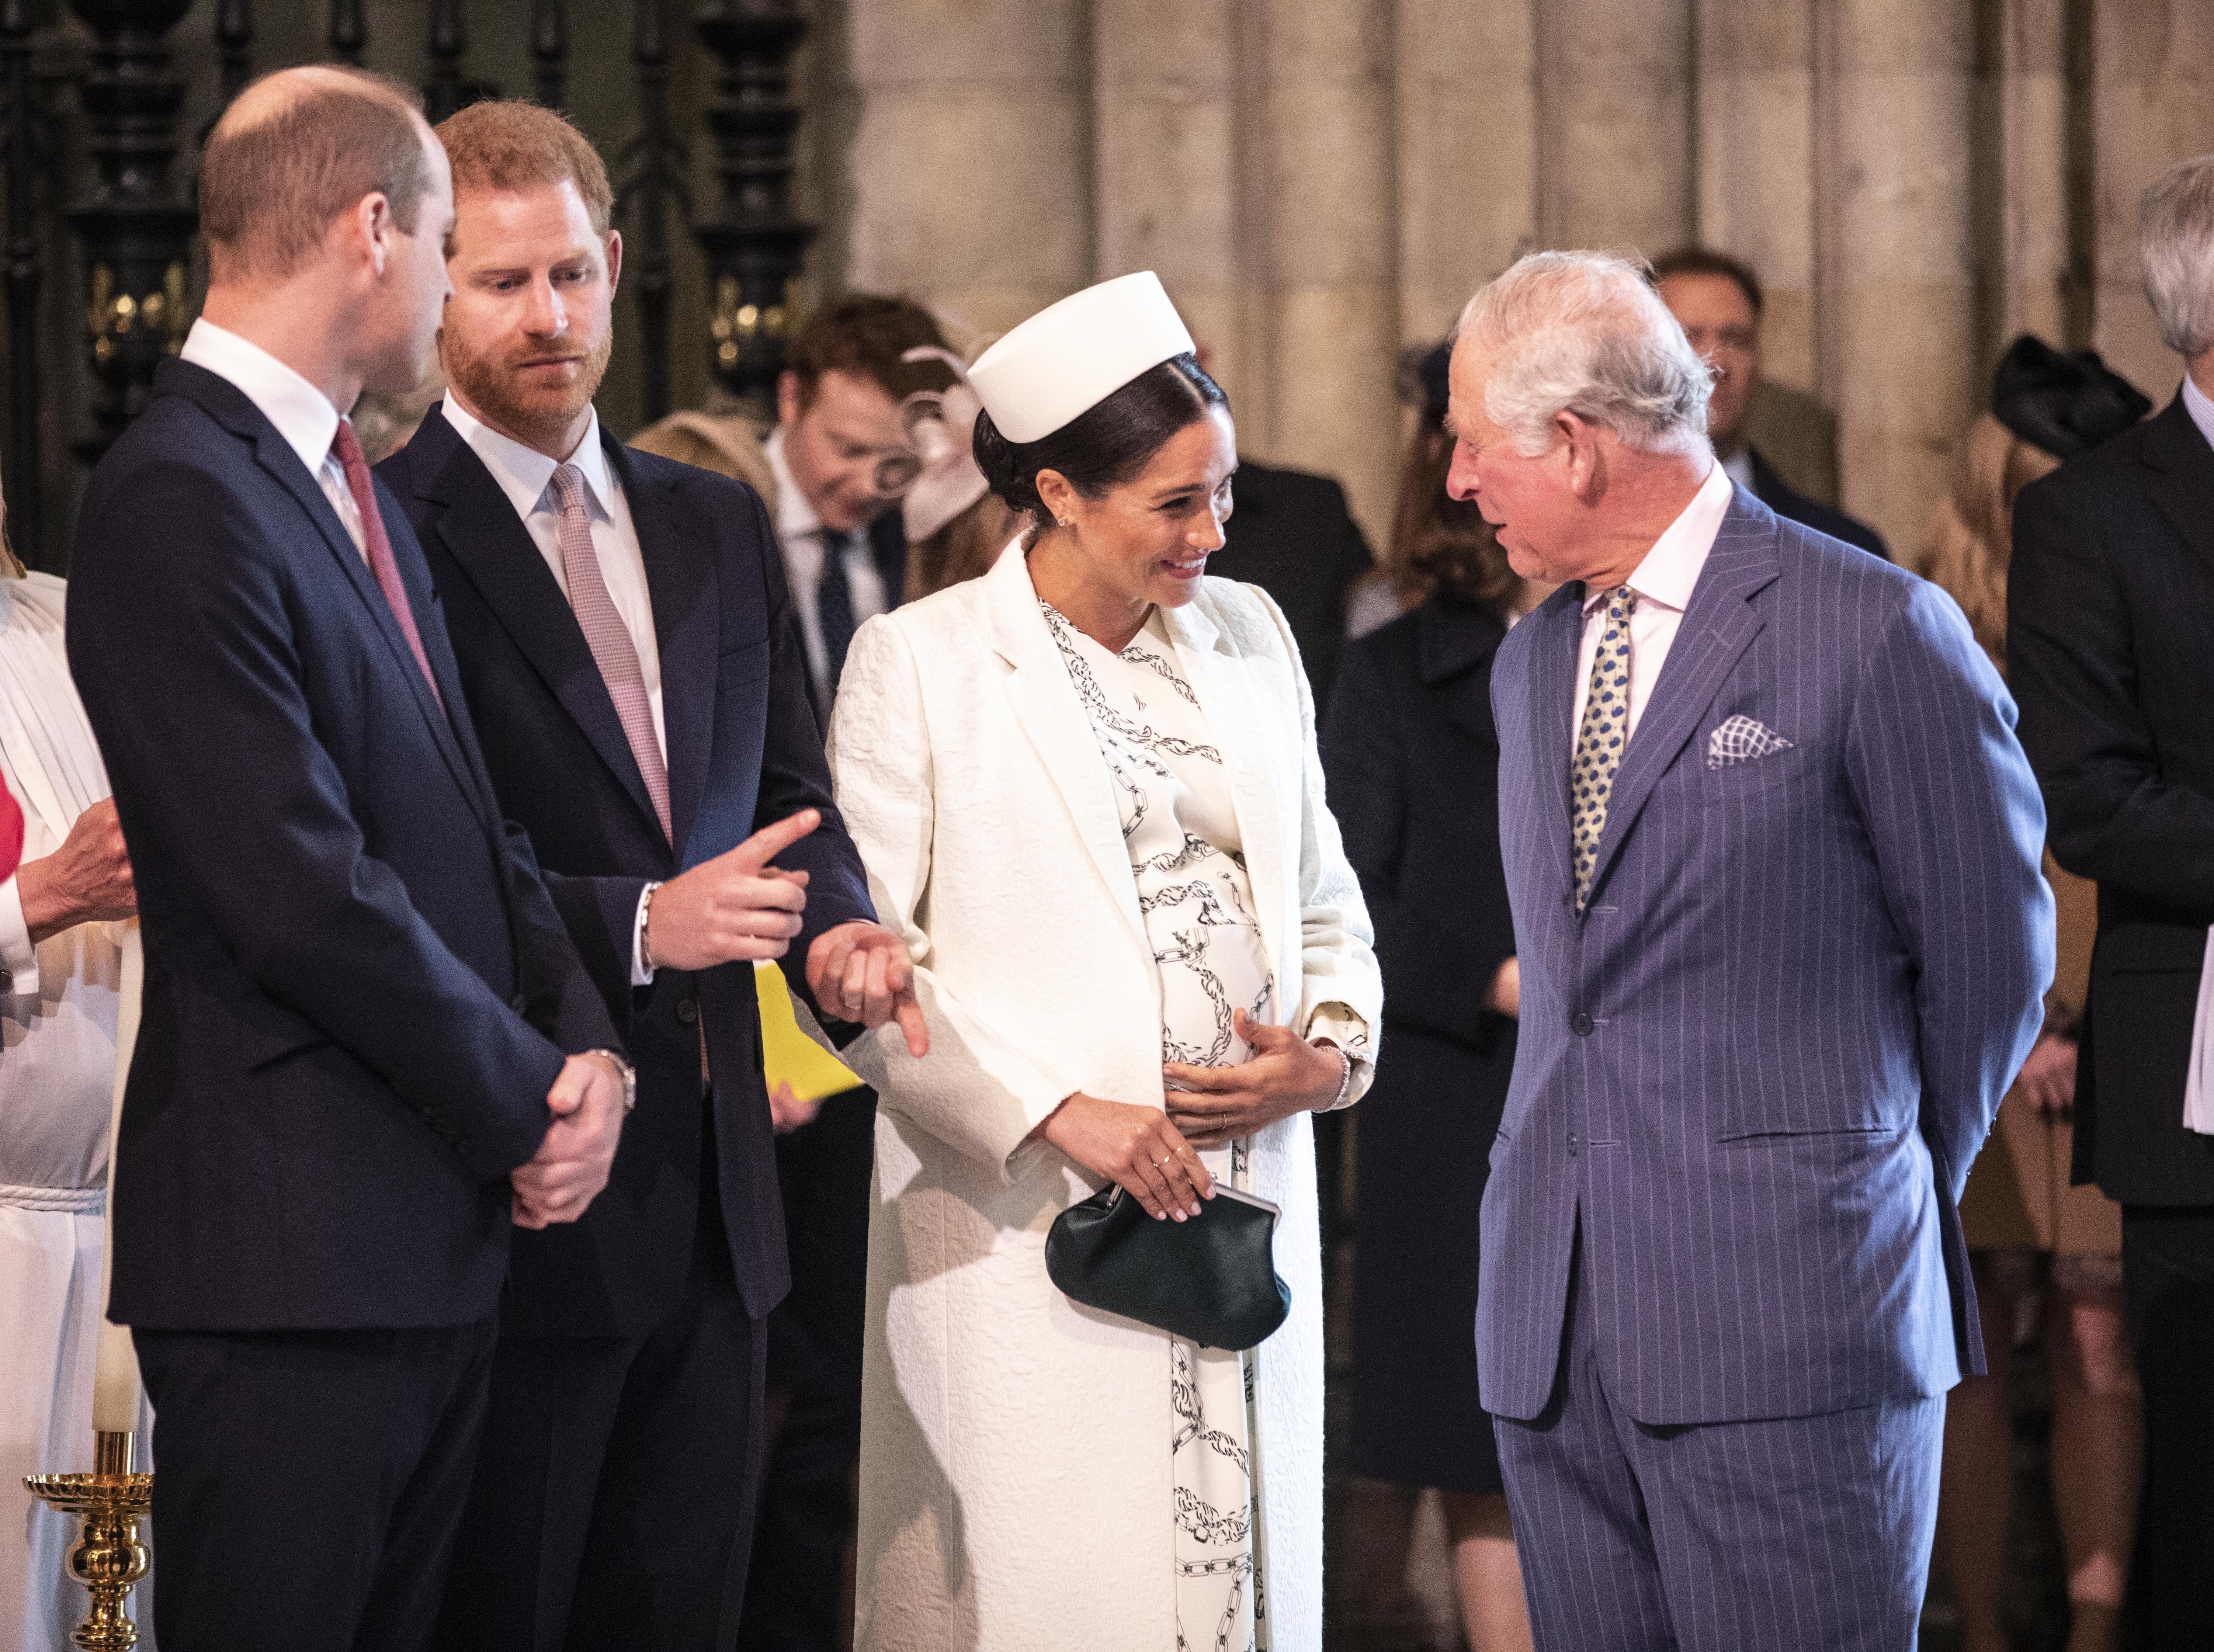 Meghan, duquesa de Sussex, conversando con el príncipe Charles en el servicio del día de la Commonwealth de la Abadía de Westminster, el 11 de marzo de 2019 en Londres, Inglaterra. | Foto: Getty Images